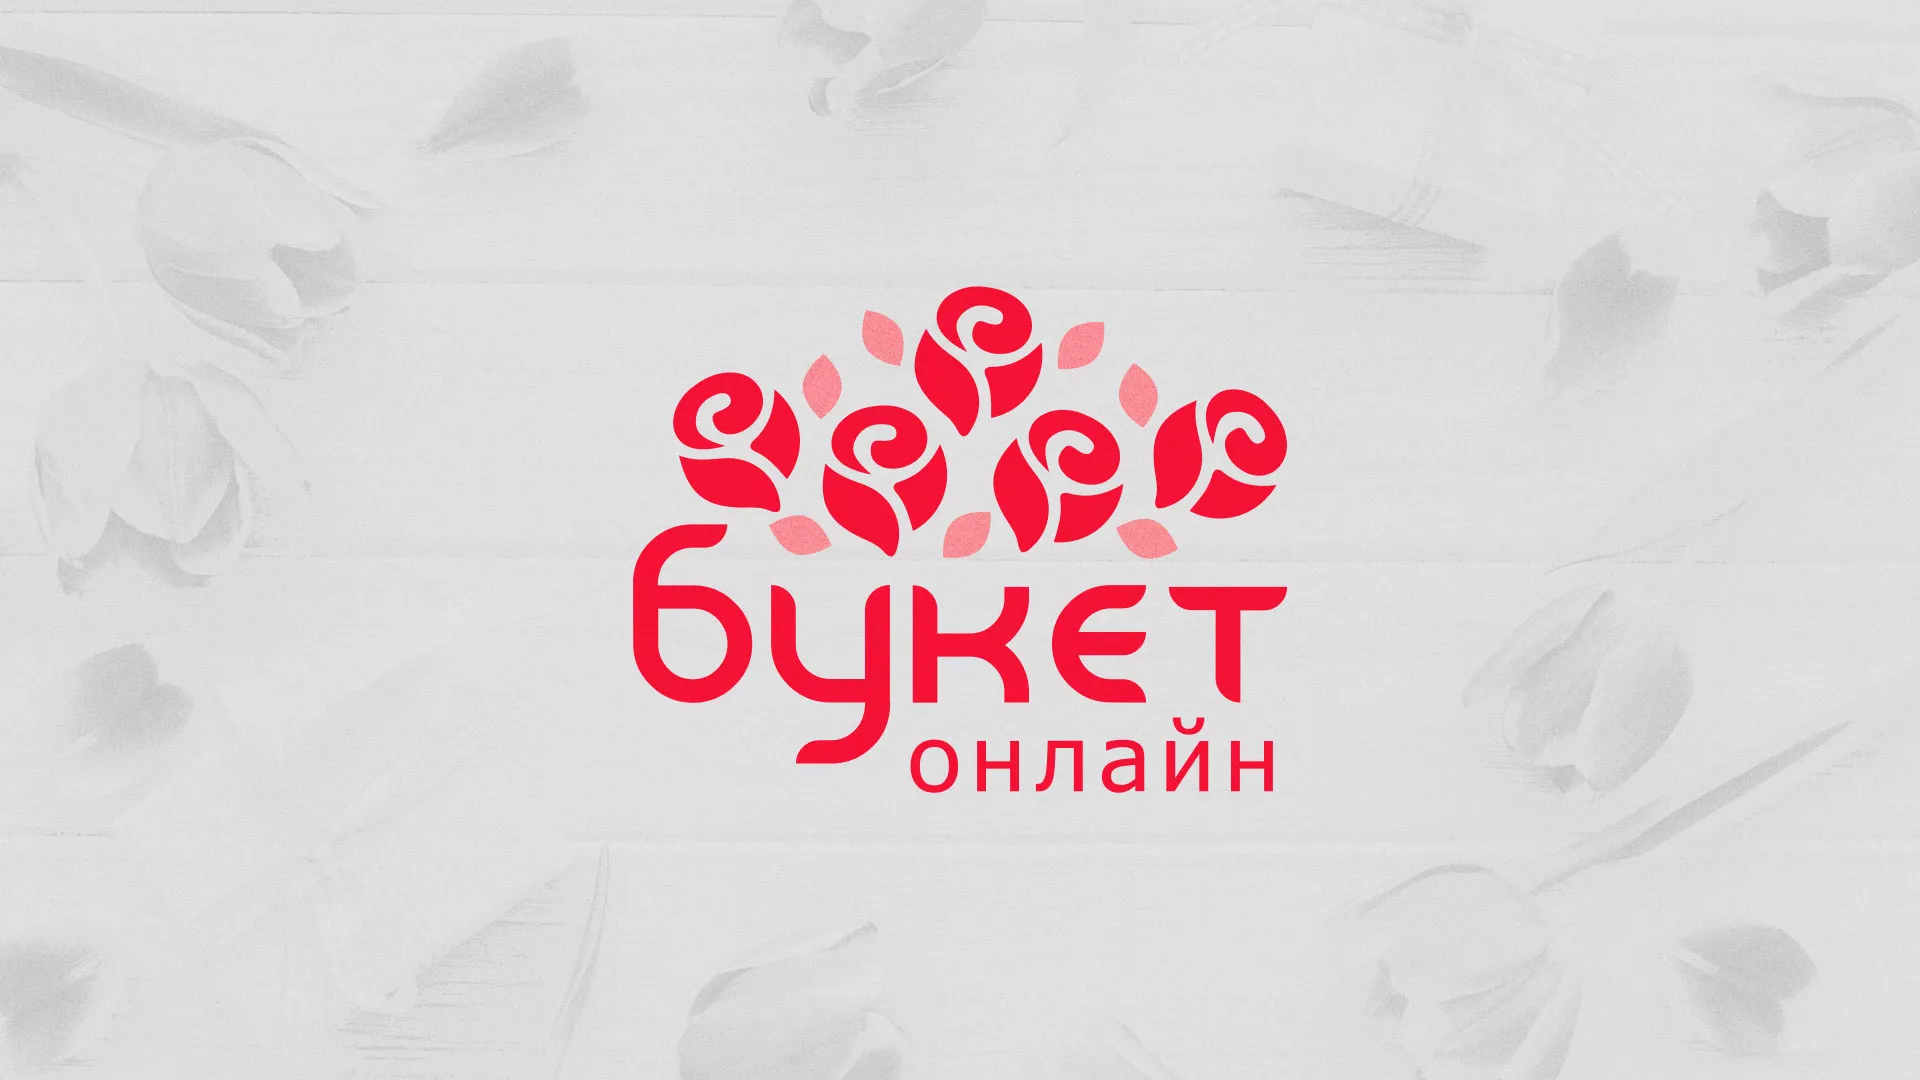 Создание интернет-магазина «Букет-онлайн» по цветам в Зеленограде